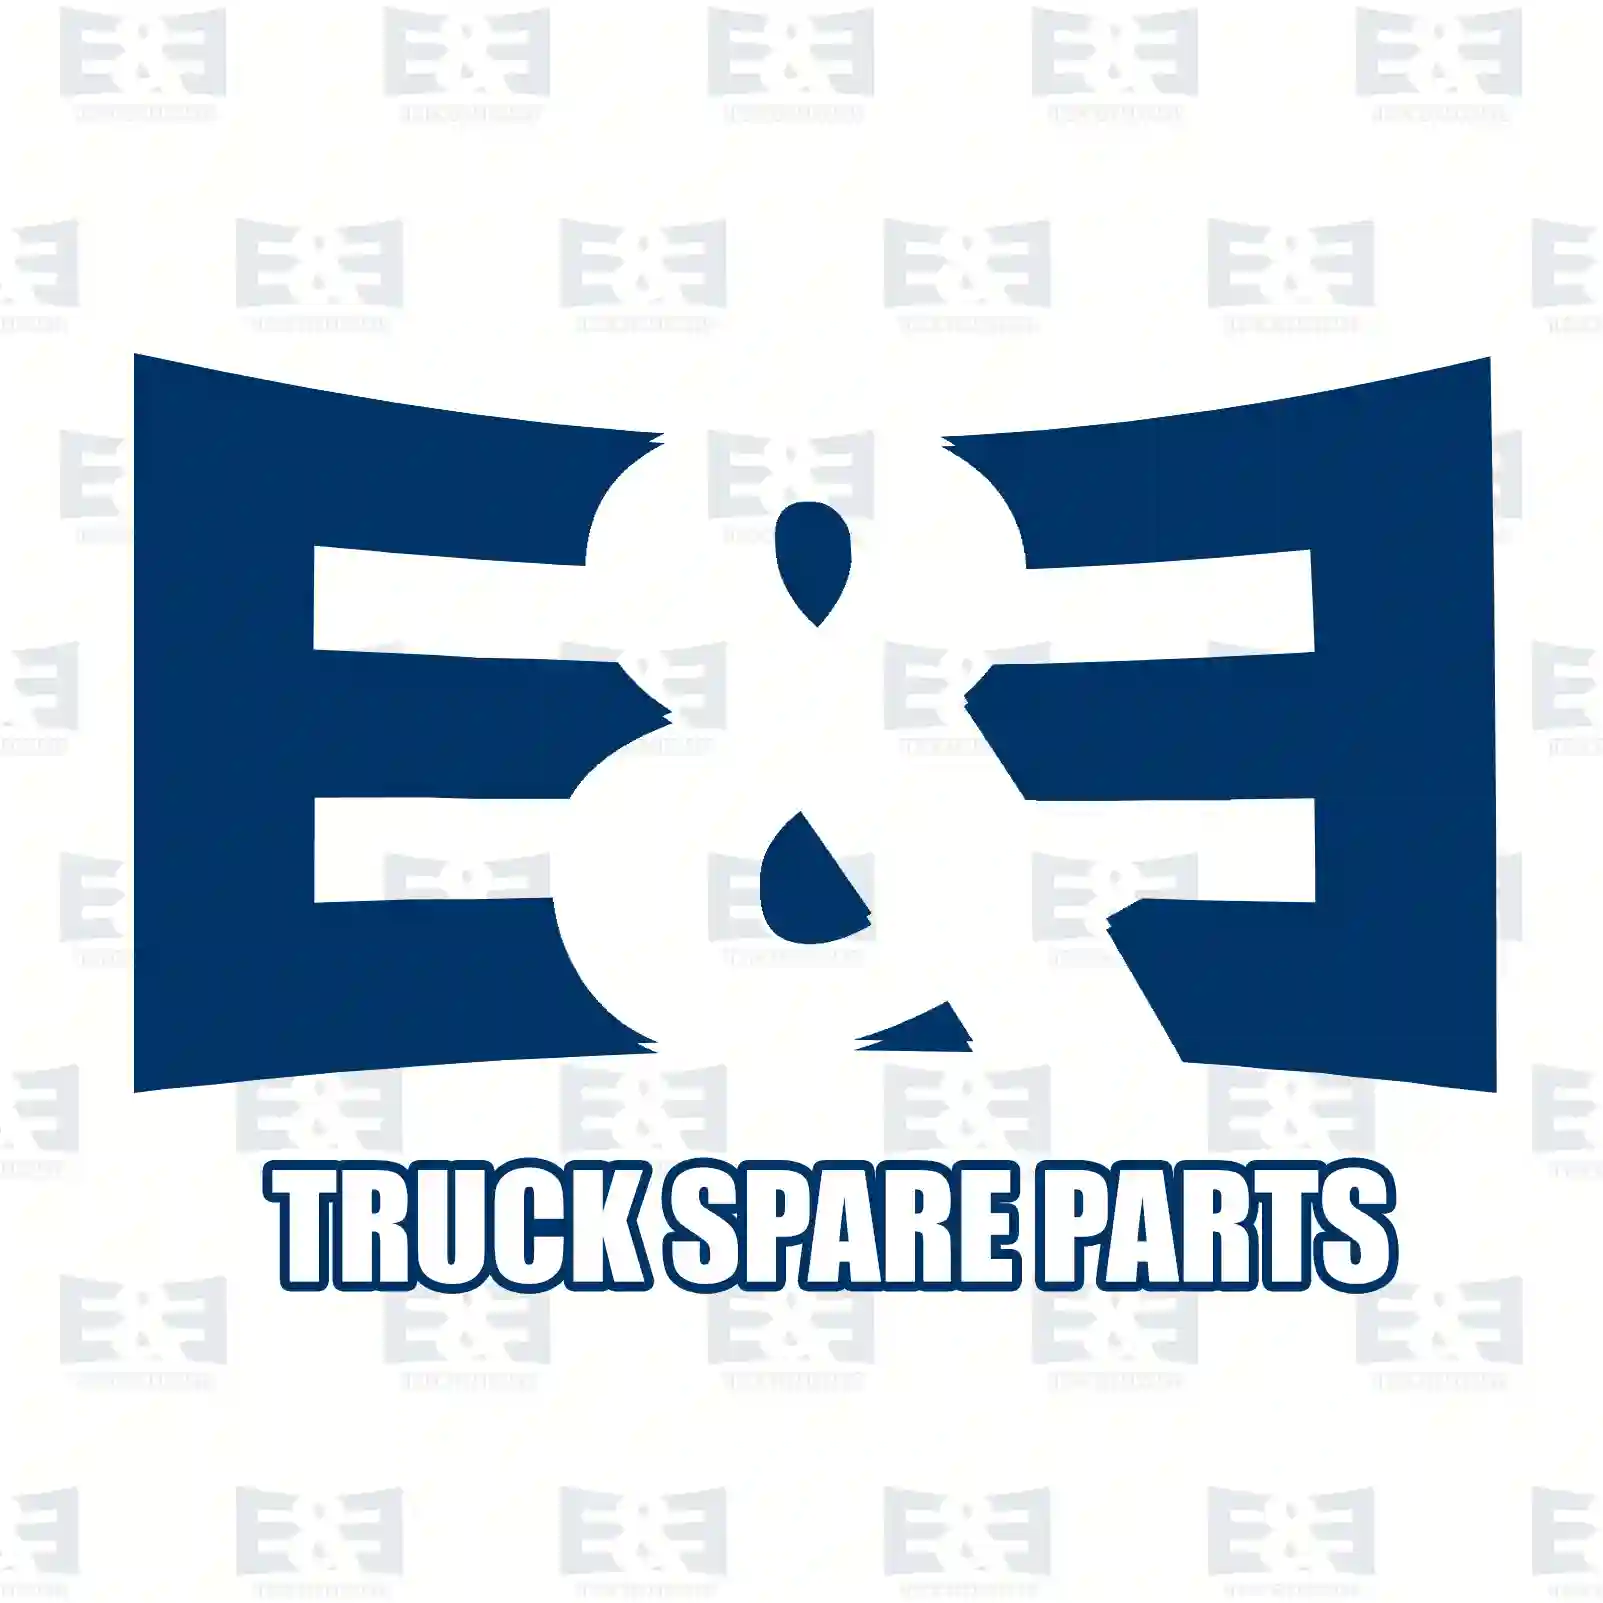 O-ring, 2E2283722, 368033, 811050, ZG02840-0008, ||  2E2283722 E&E Truck Spare Parts | Truck Spare Parts, Auotomotive Spare Parts O-ring, 2E2283722, 368033, 811050, ZG02840-0008, ||  2E2283722 E&E Truck Spare Parts | Truck Spare Parts, Auotomotive Spare Parts